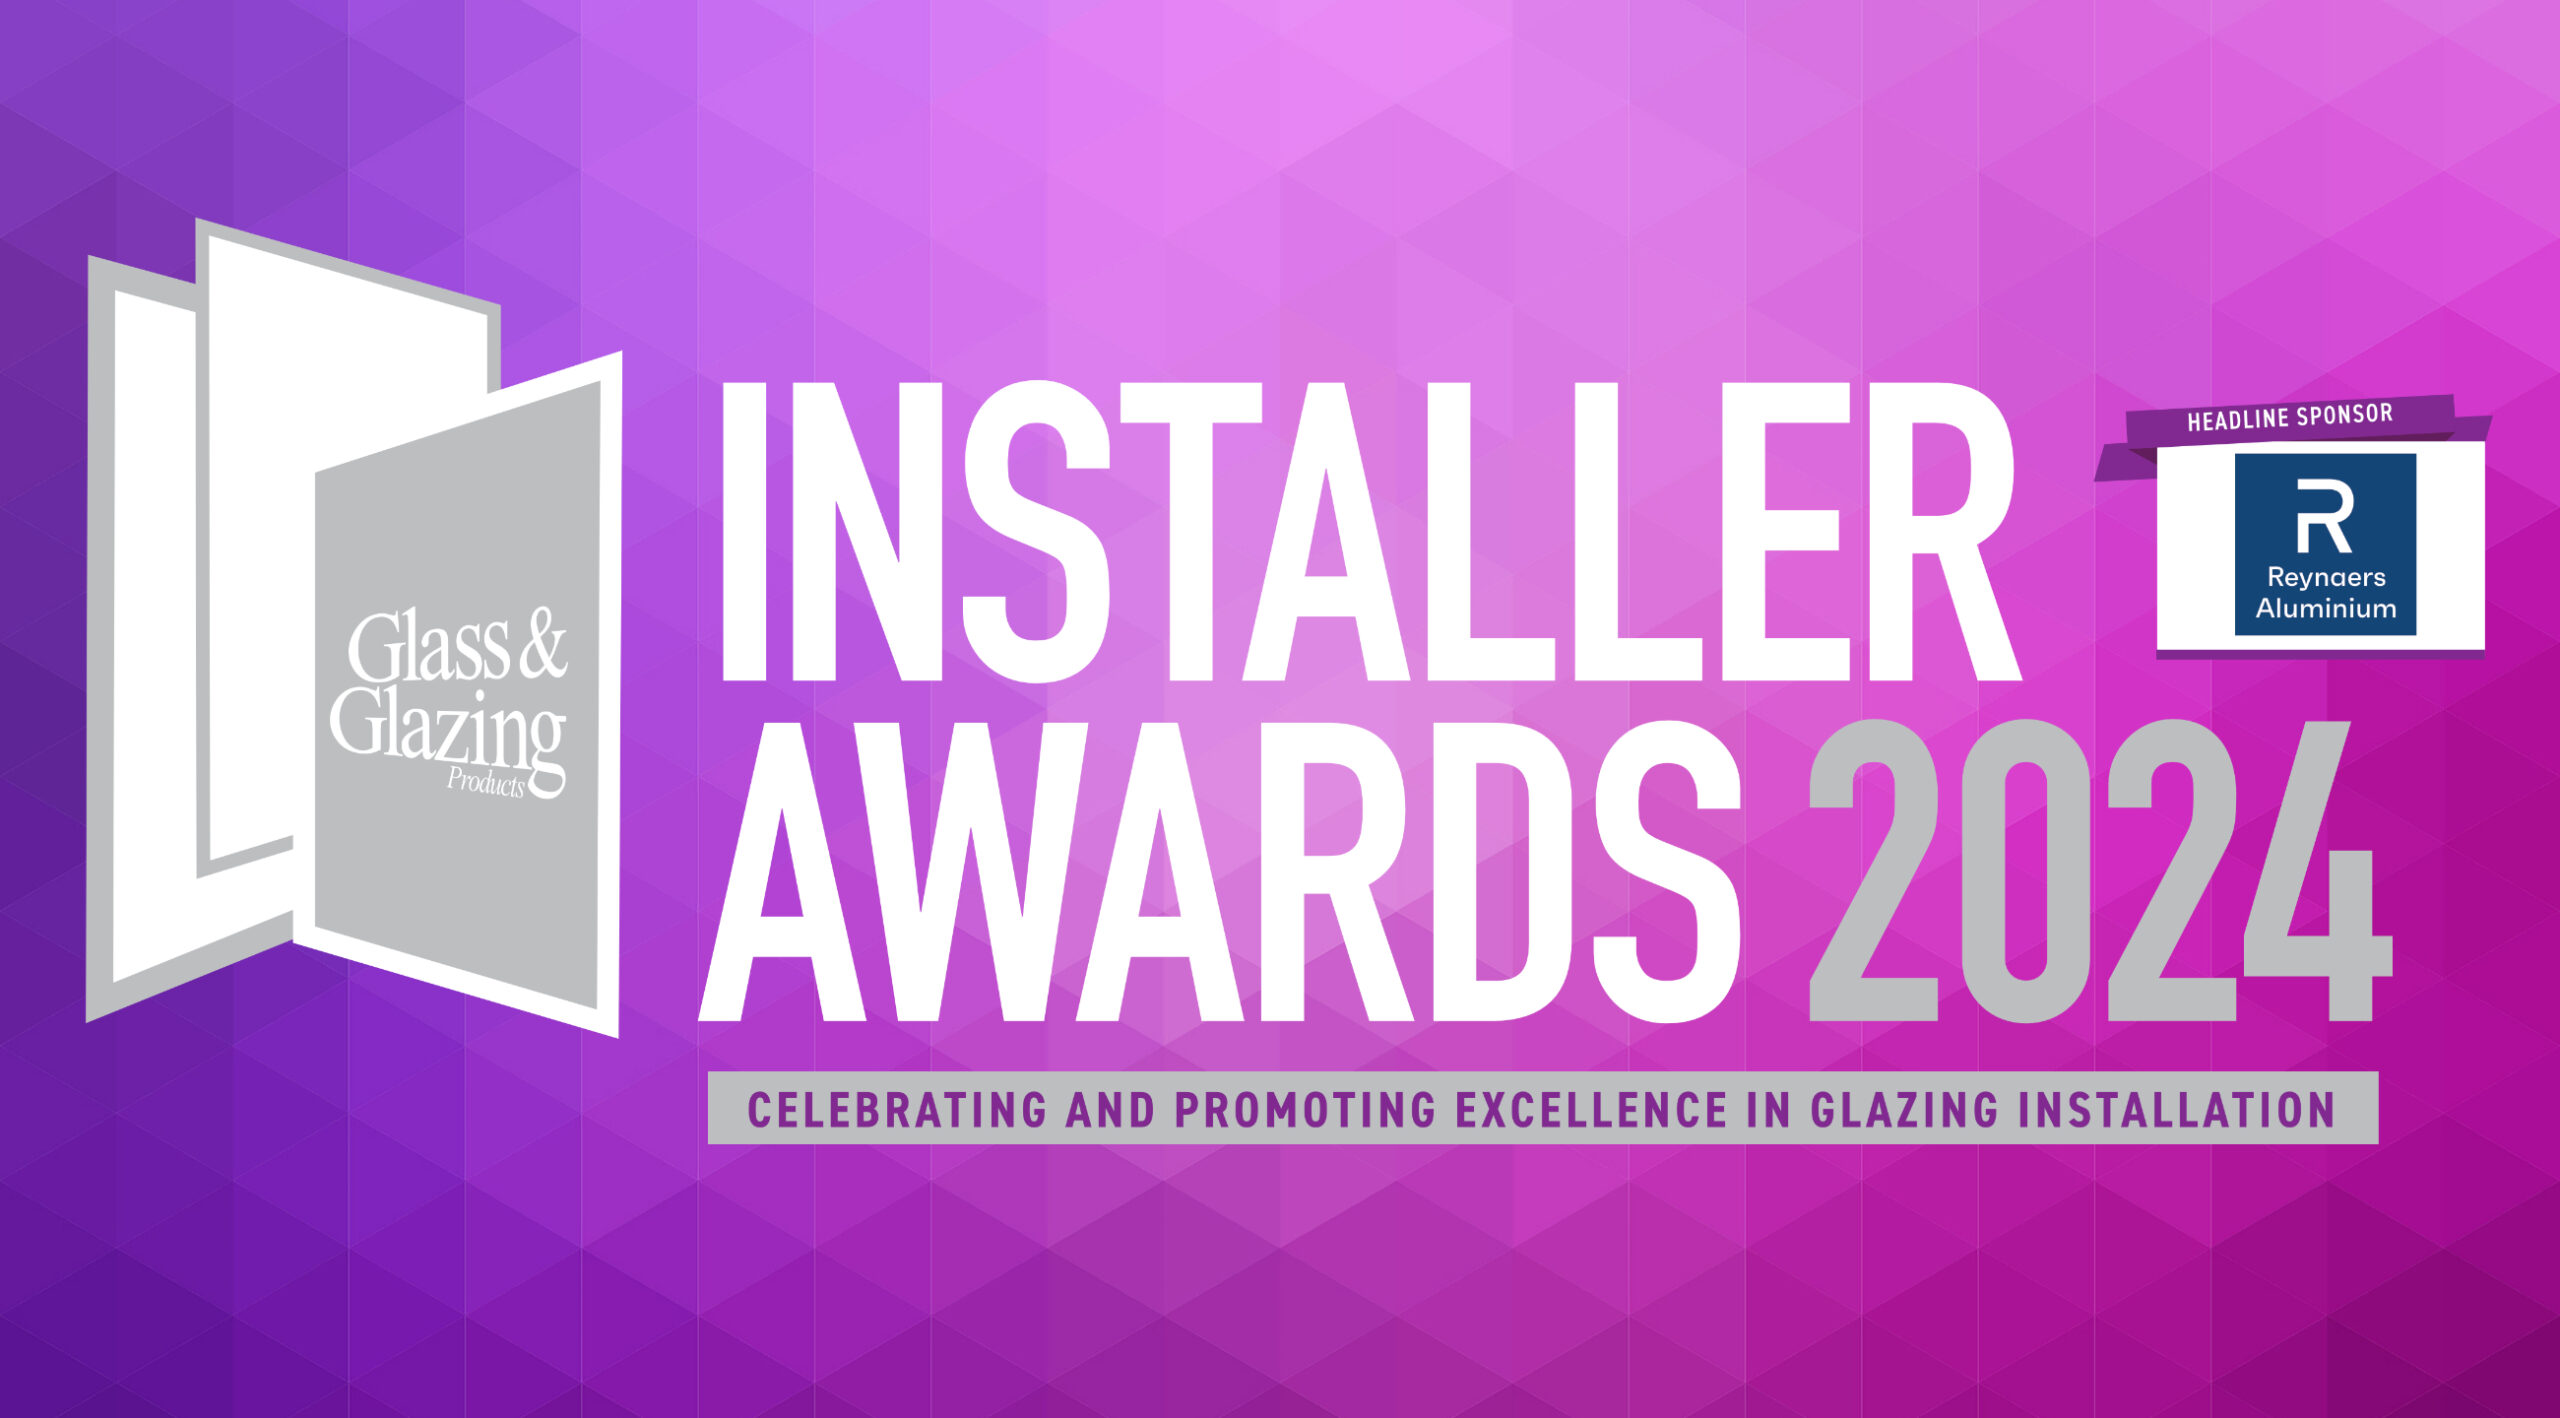 Glazpart makes Installer Awards shortlist